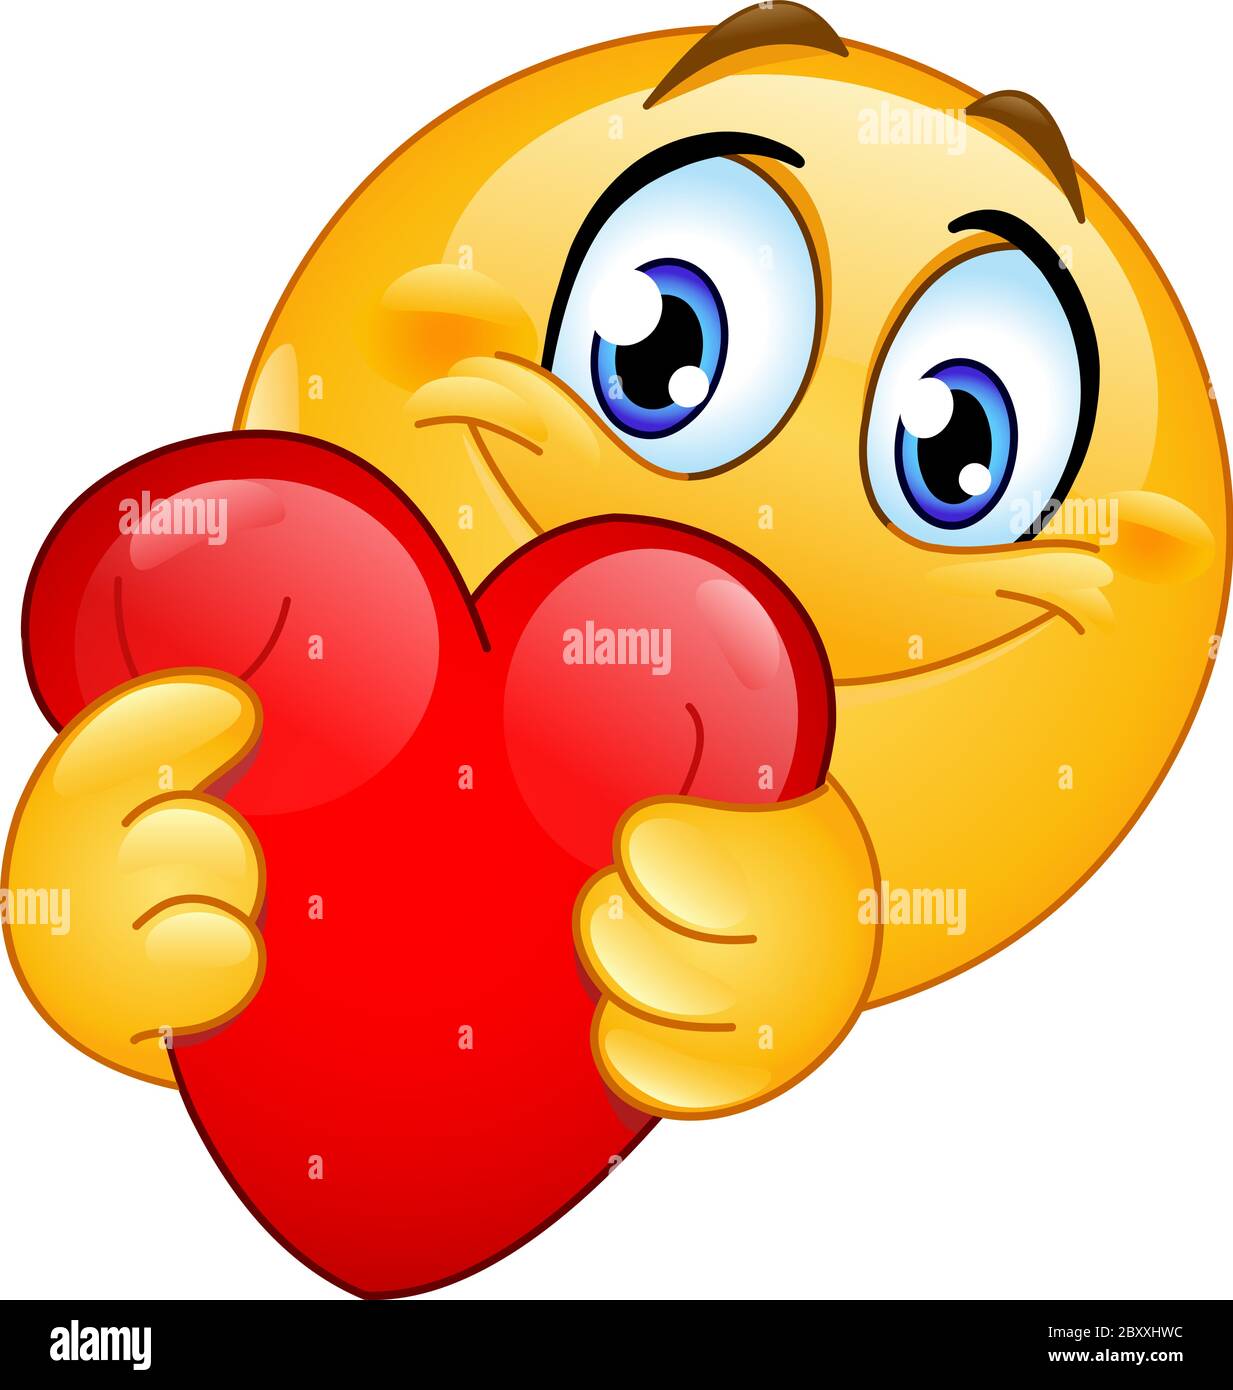 Fröhliche Emoji Emoticon umarmt ein rotes Herz Stock Vektor